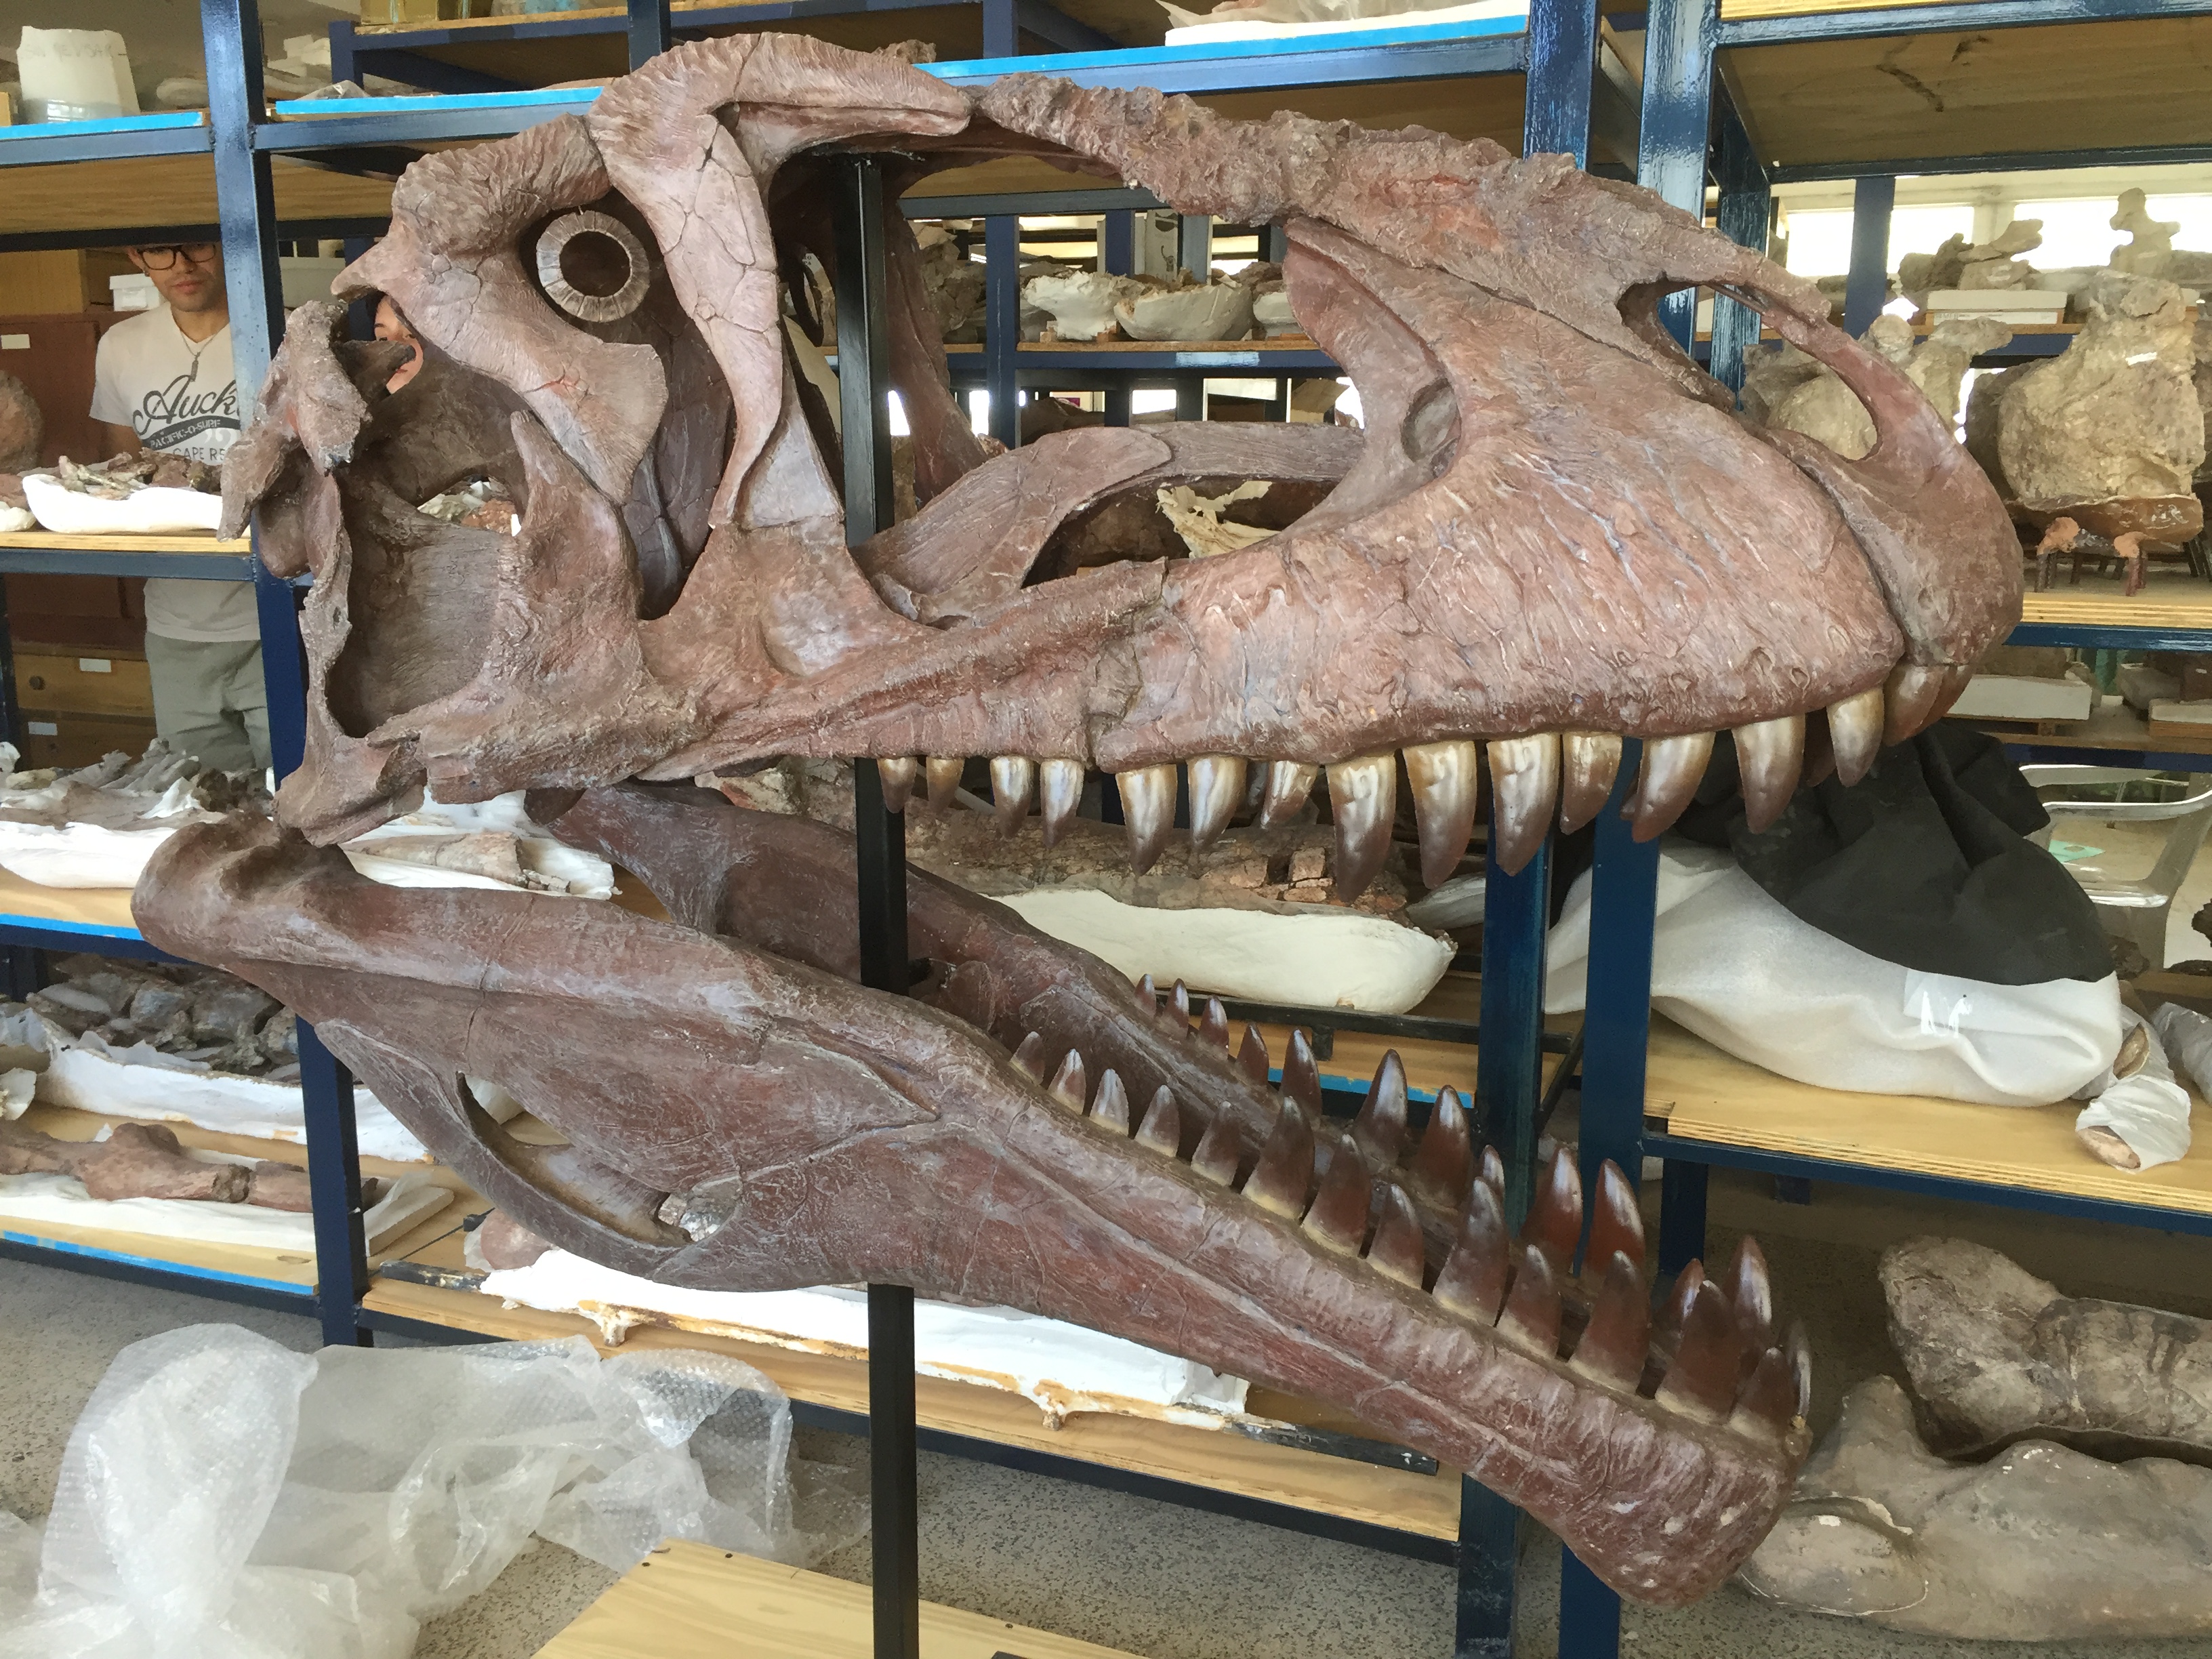 El cráneo del dinosaurio encontrado mide 127 centímetros  (foto: Fundación Azara)